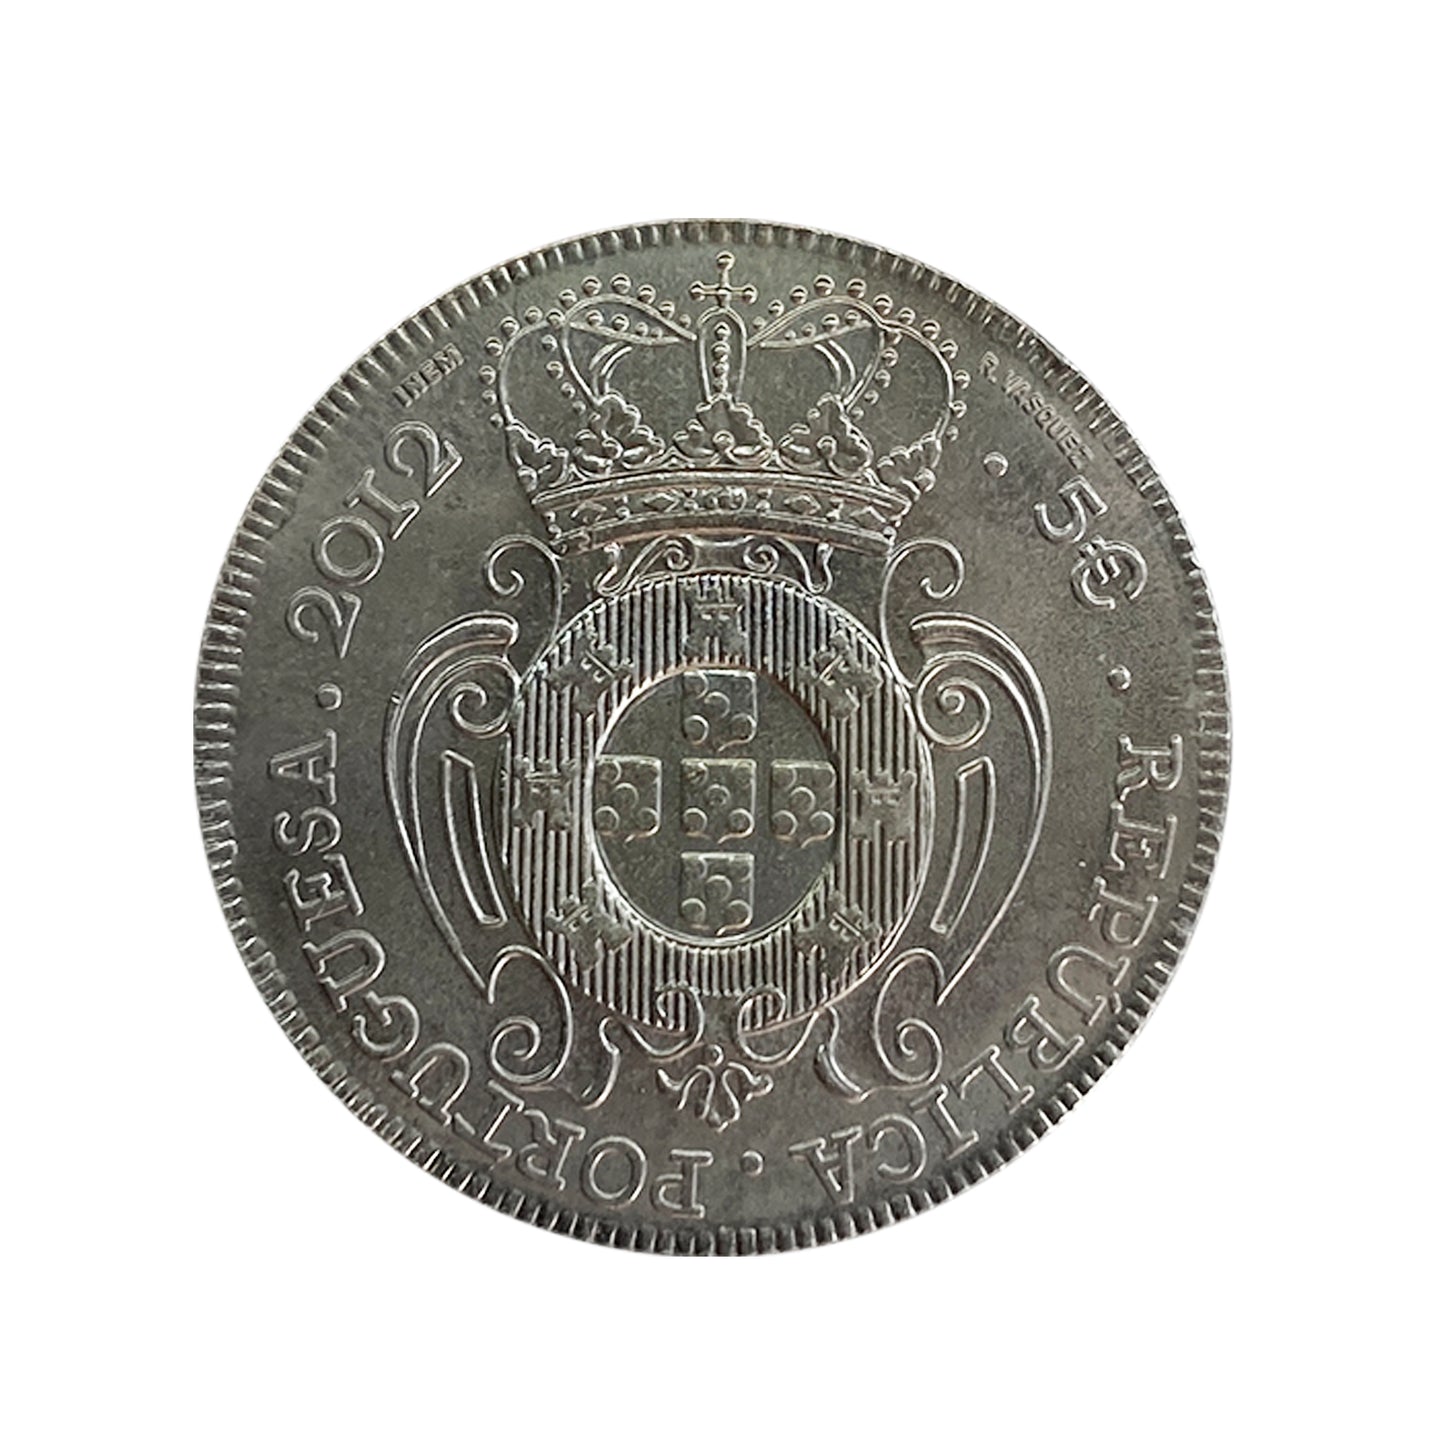 Portugal - Moneda 5 euros 2012 - Rey Joao V